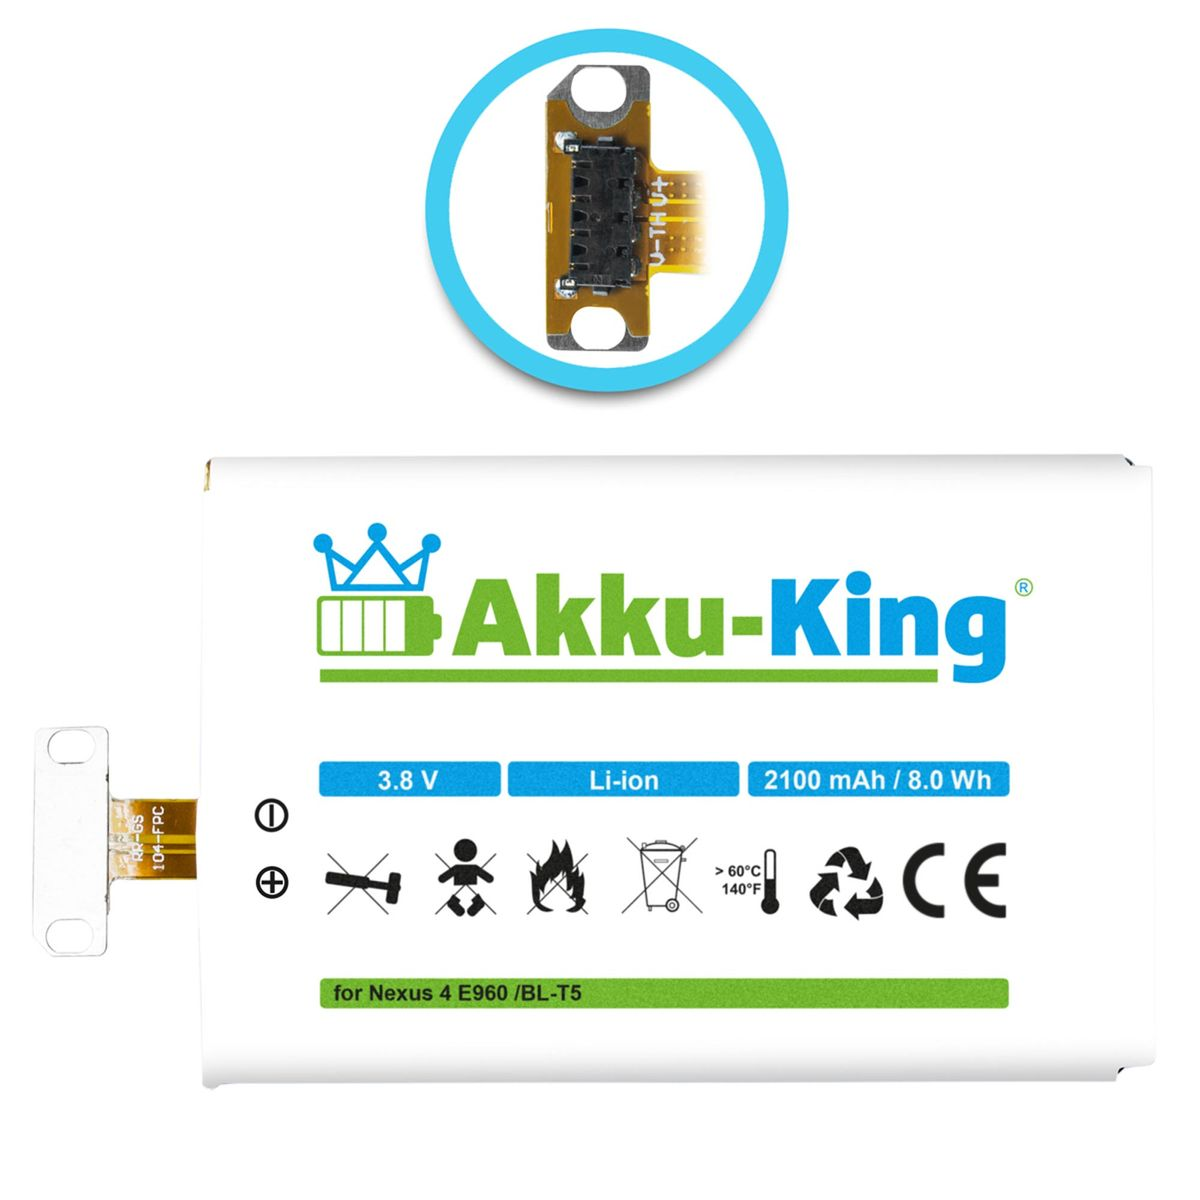 kompatibel Li-Ion LG 2100mAh AKKU-KING mit BL-T5 Akku Volt, Handy-Akku, 3.8